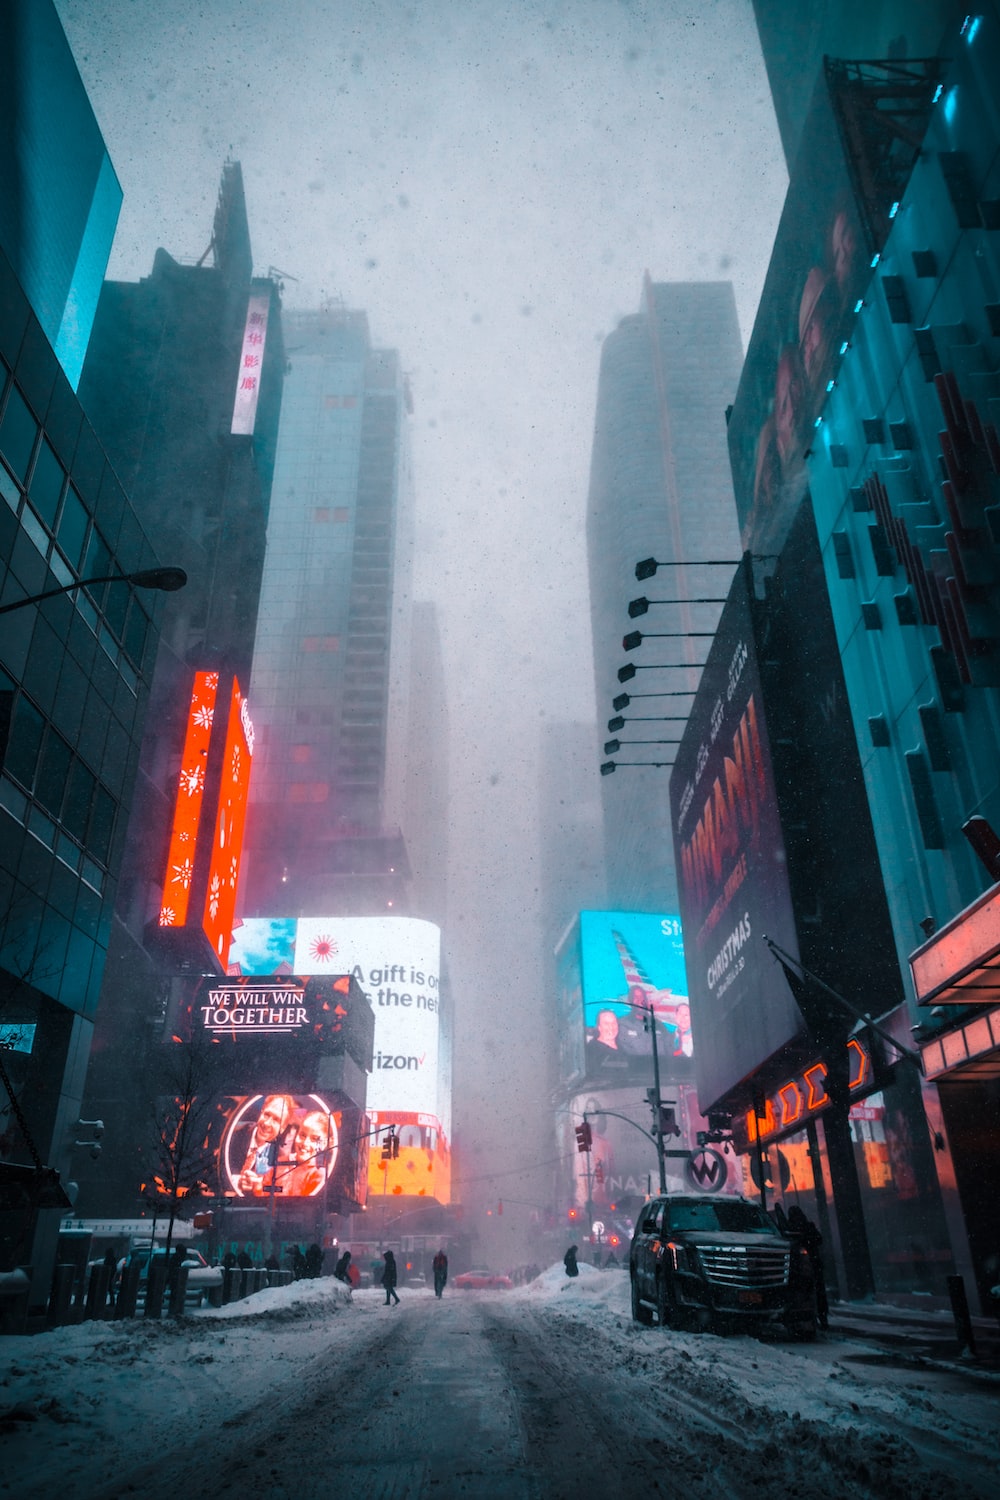 Rainy New York Pictures Image